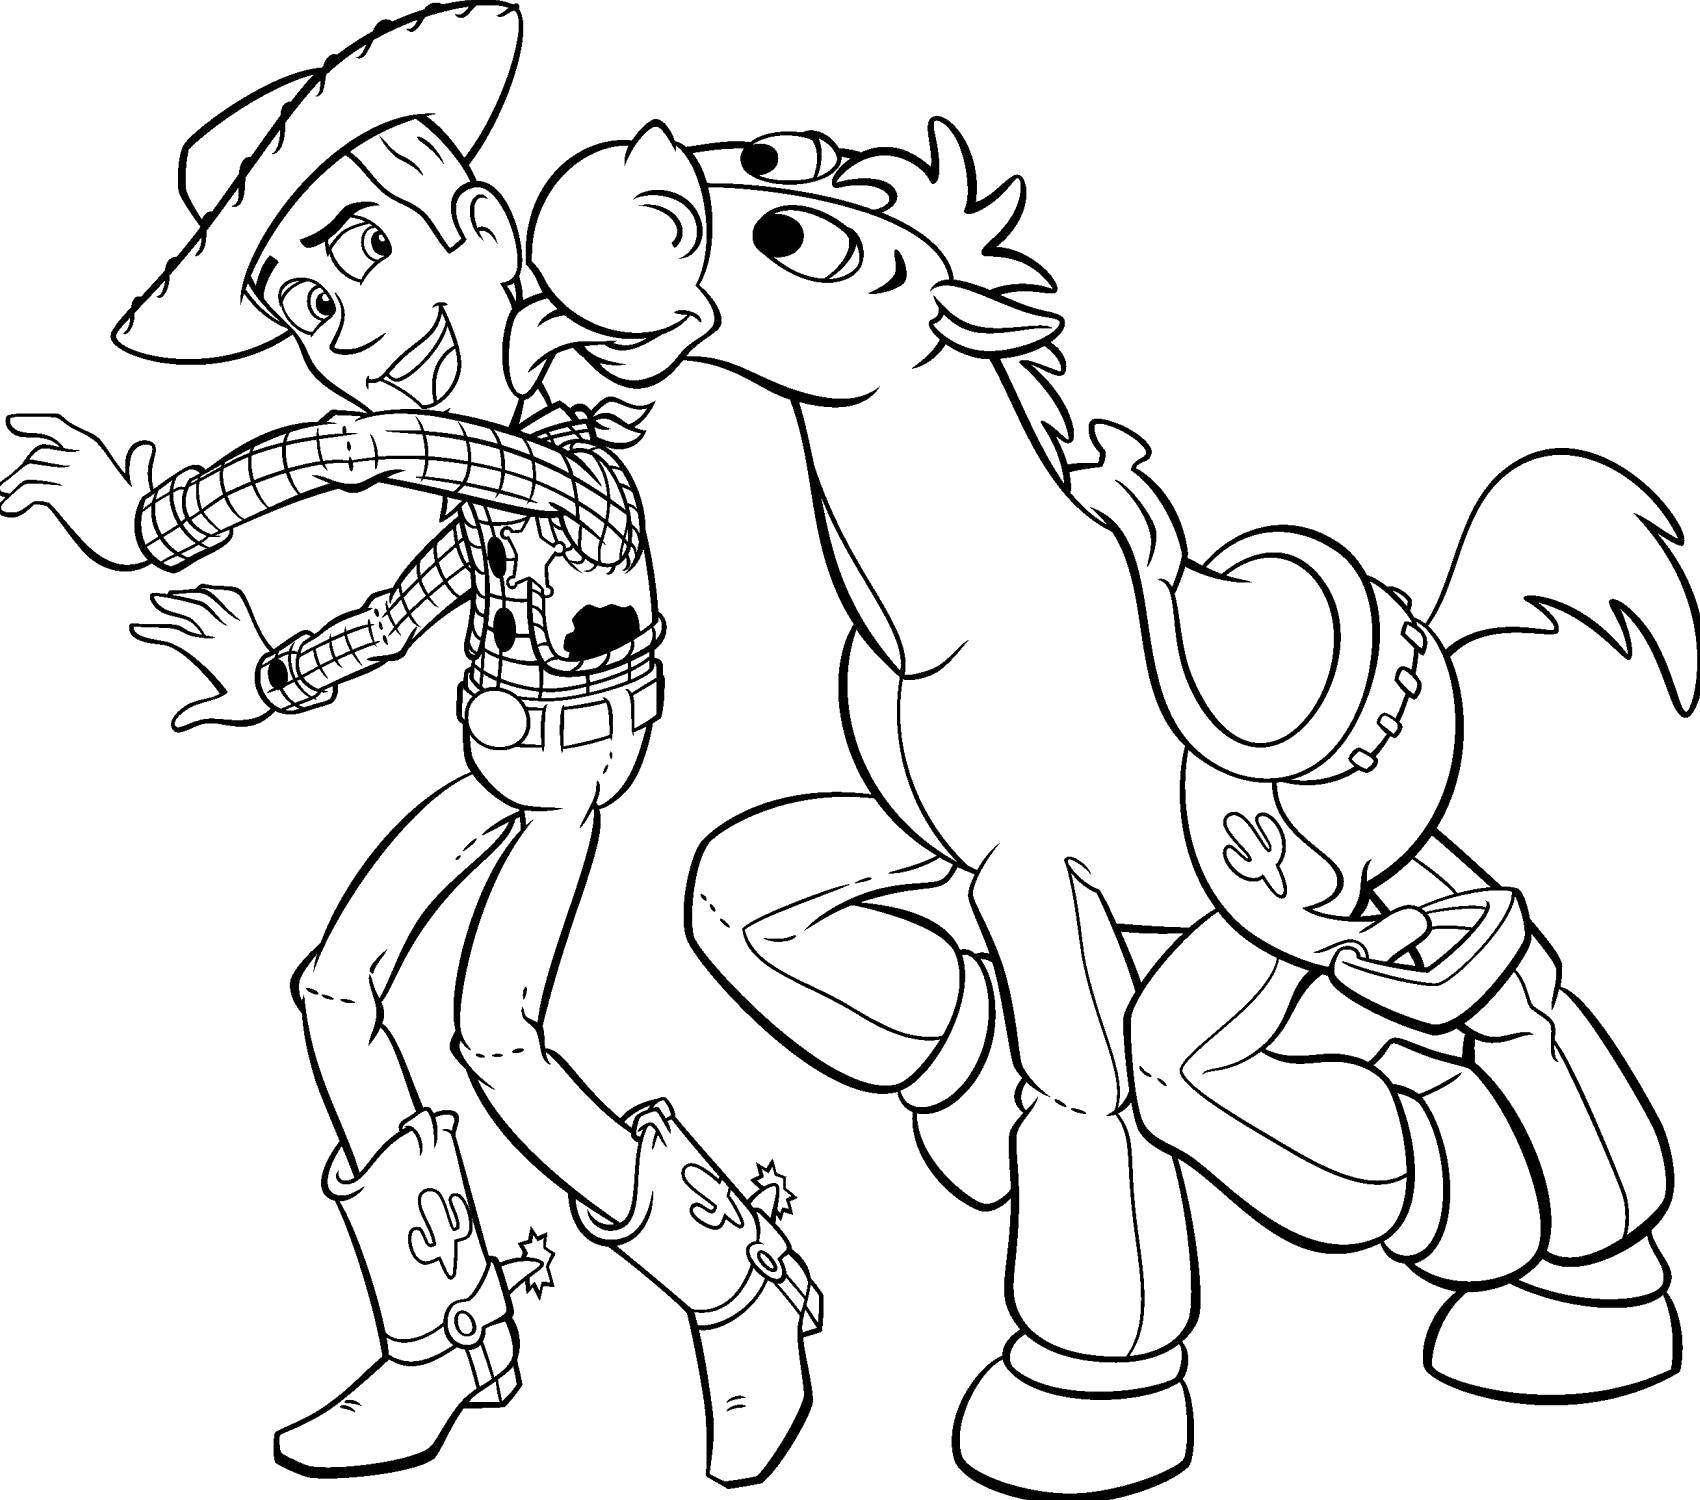 Розмальовки  Шериф вуді з конем.. Завантажити розмальовку Персонаж з мультфільму, Історія іграшок .  Роздрукувати ,розмальовки,